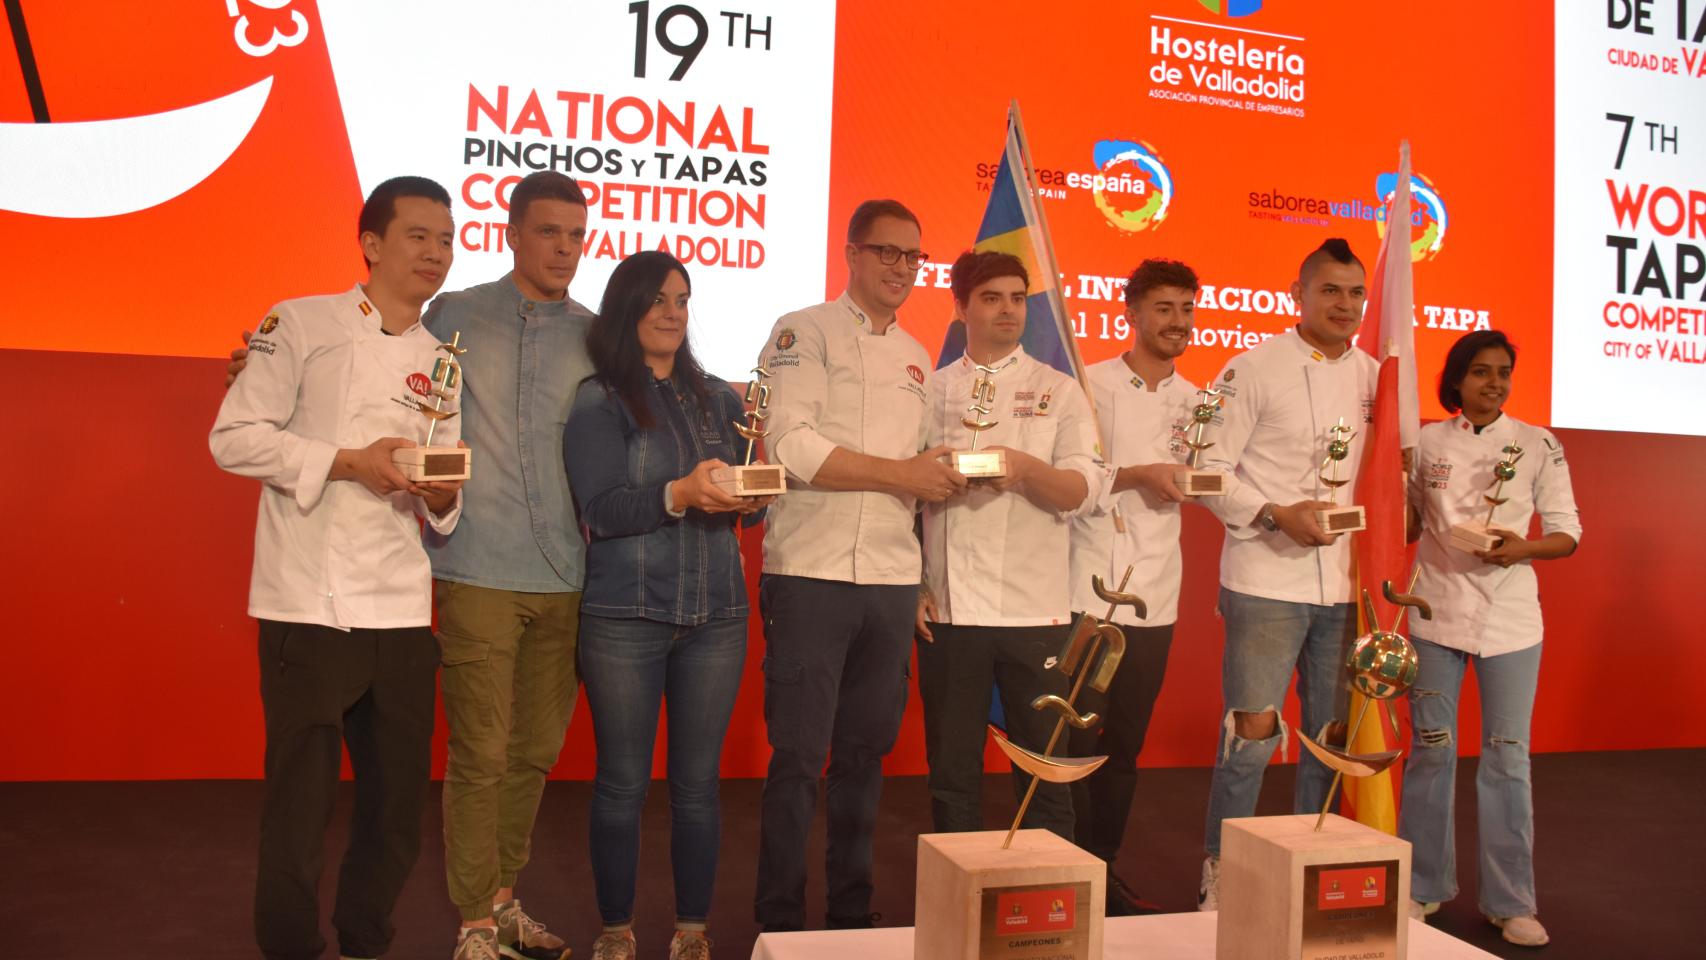 Campeonato Nacional y Mundial de pinchos y tapas en Valladolid